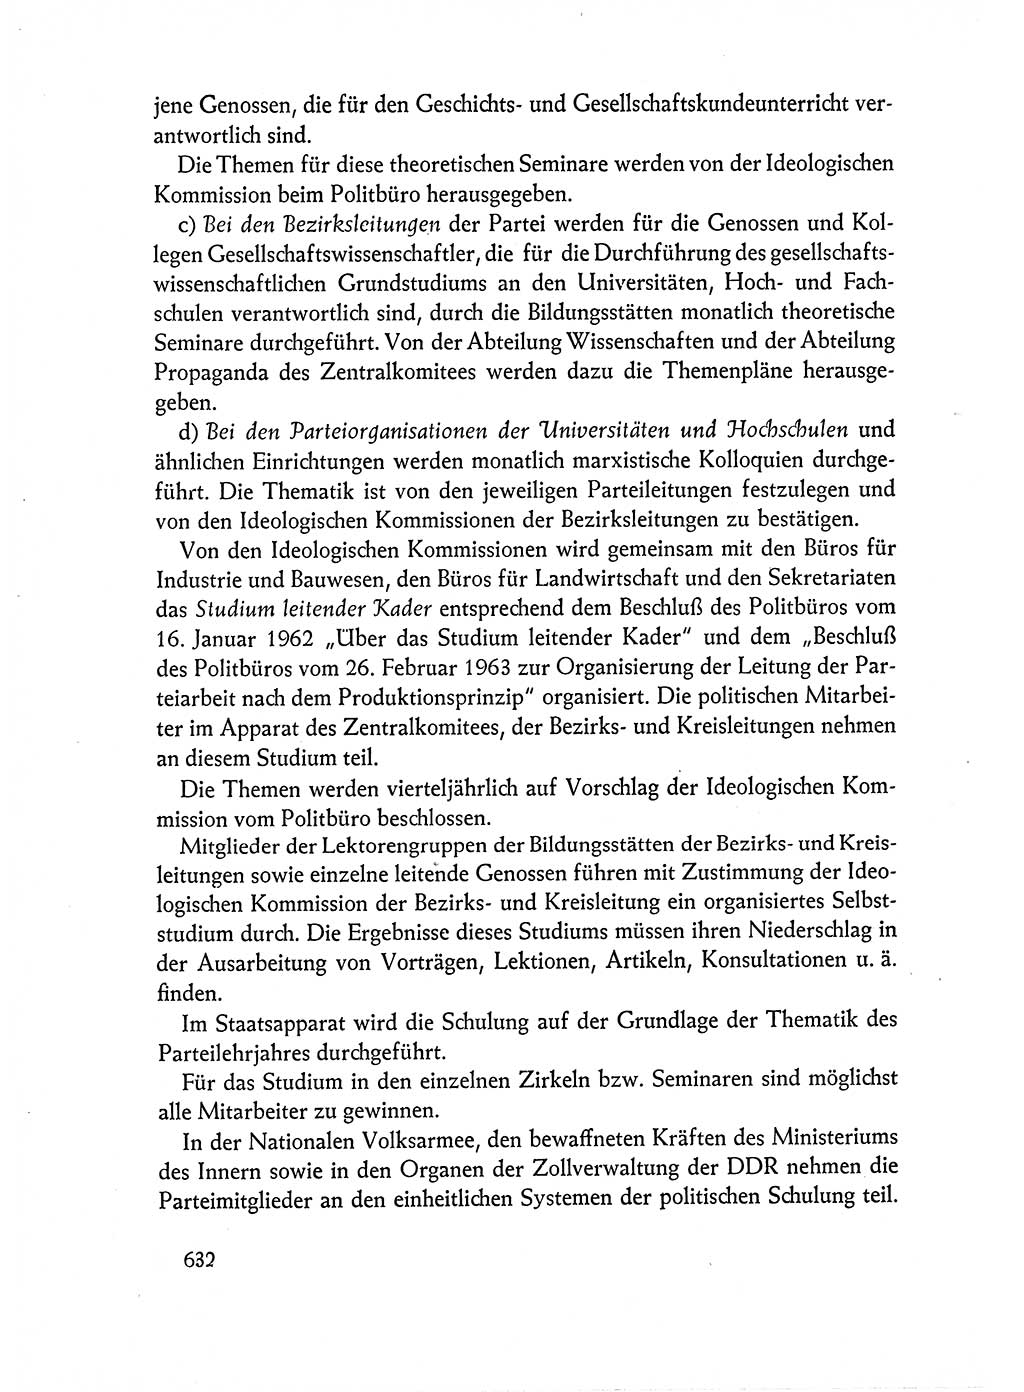 Dokumente der Sozialistischen Einheitspartei Deutschlands (SED) [Deutsche Demokratische Republik (DDR)] 1962-1963, Seite 632 (Dok. SED DDR 1962-1963, S. 632)